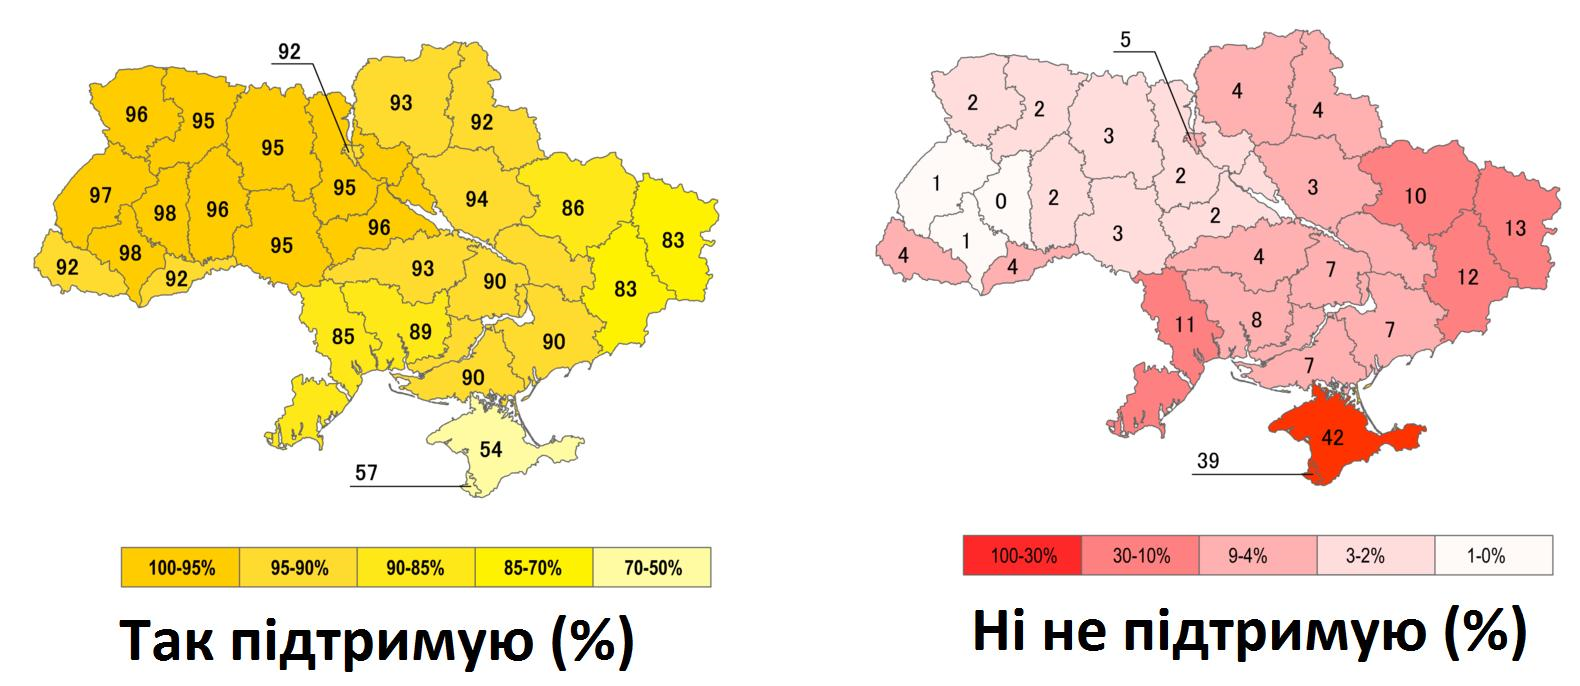 Карта границы украины 1991 года с городами. Карта Украины референдум 1991. Всеукраинский референдум (1991)независимость Украины. Карта Украины 1991 года. Карта референдума 1991 года на Украине.